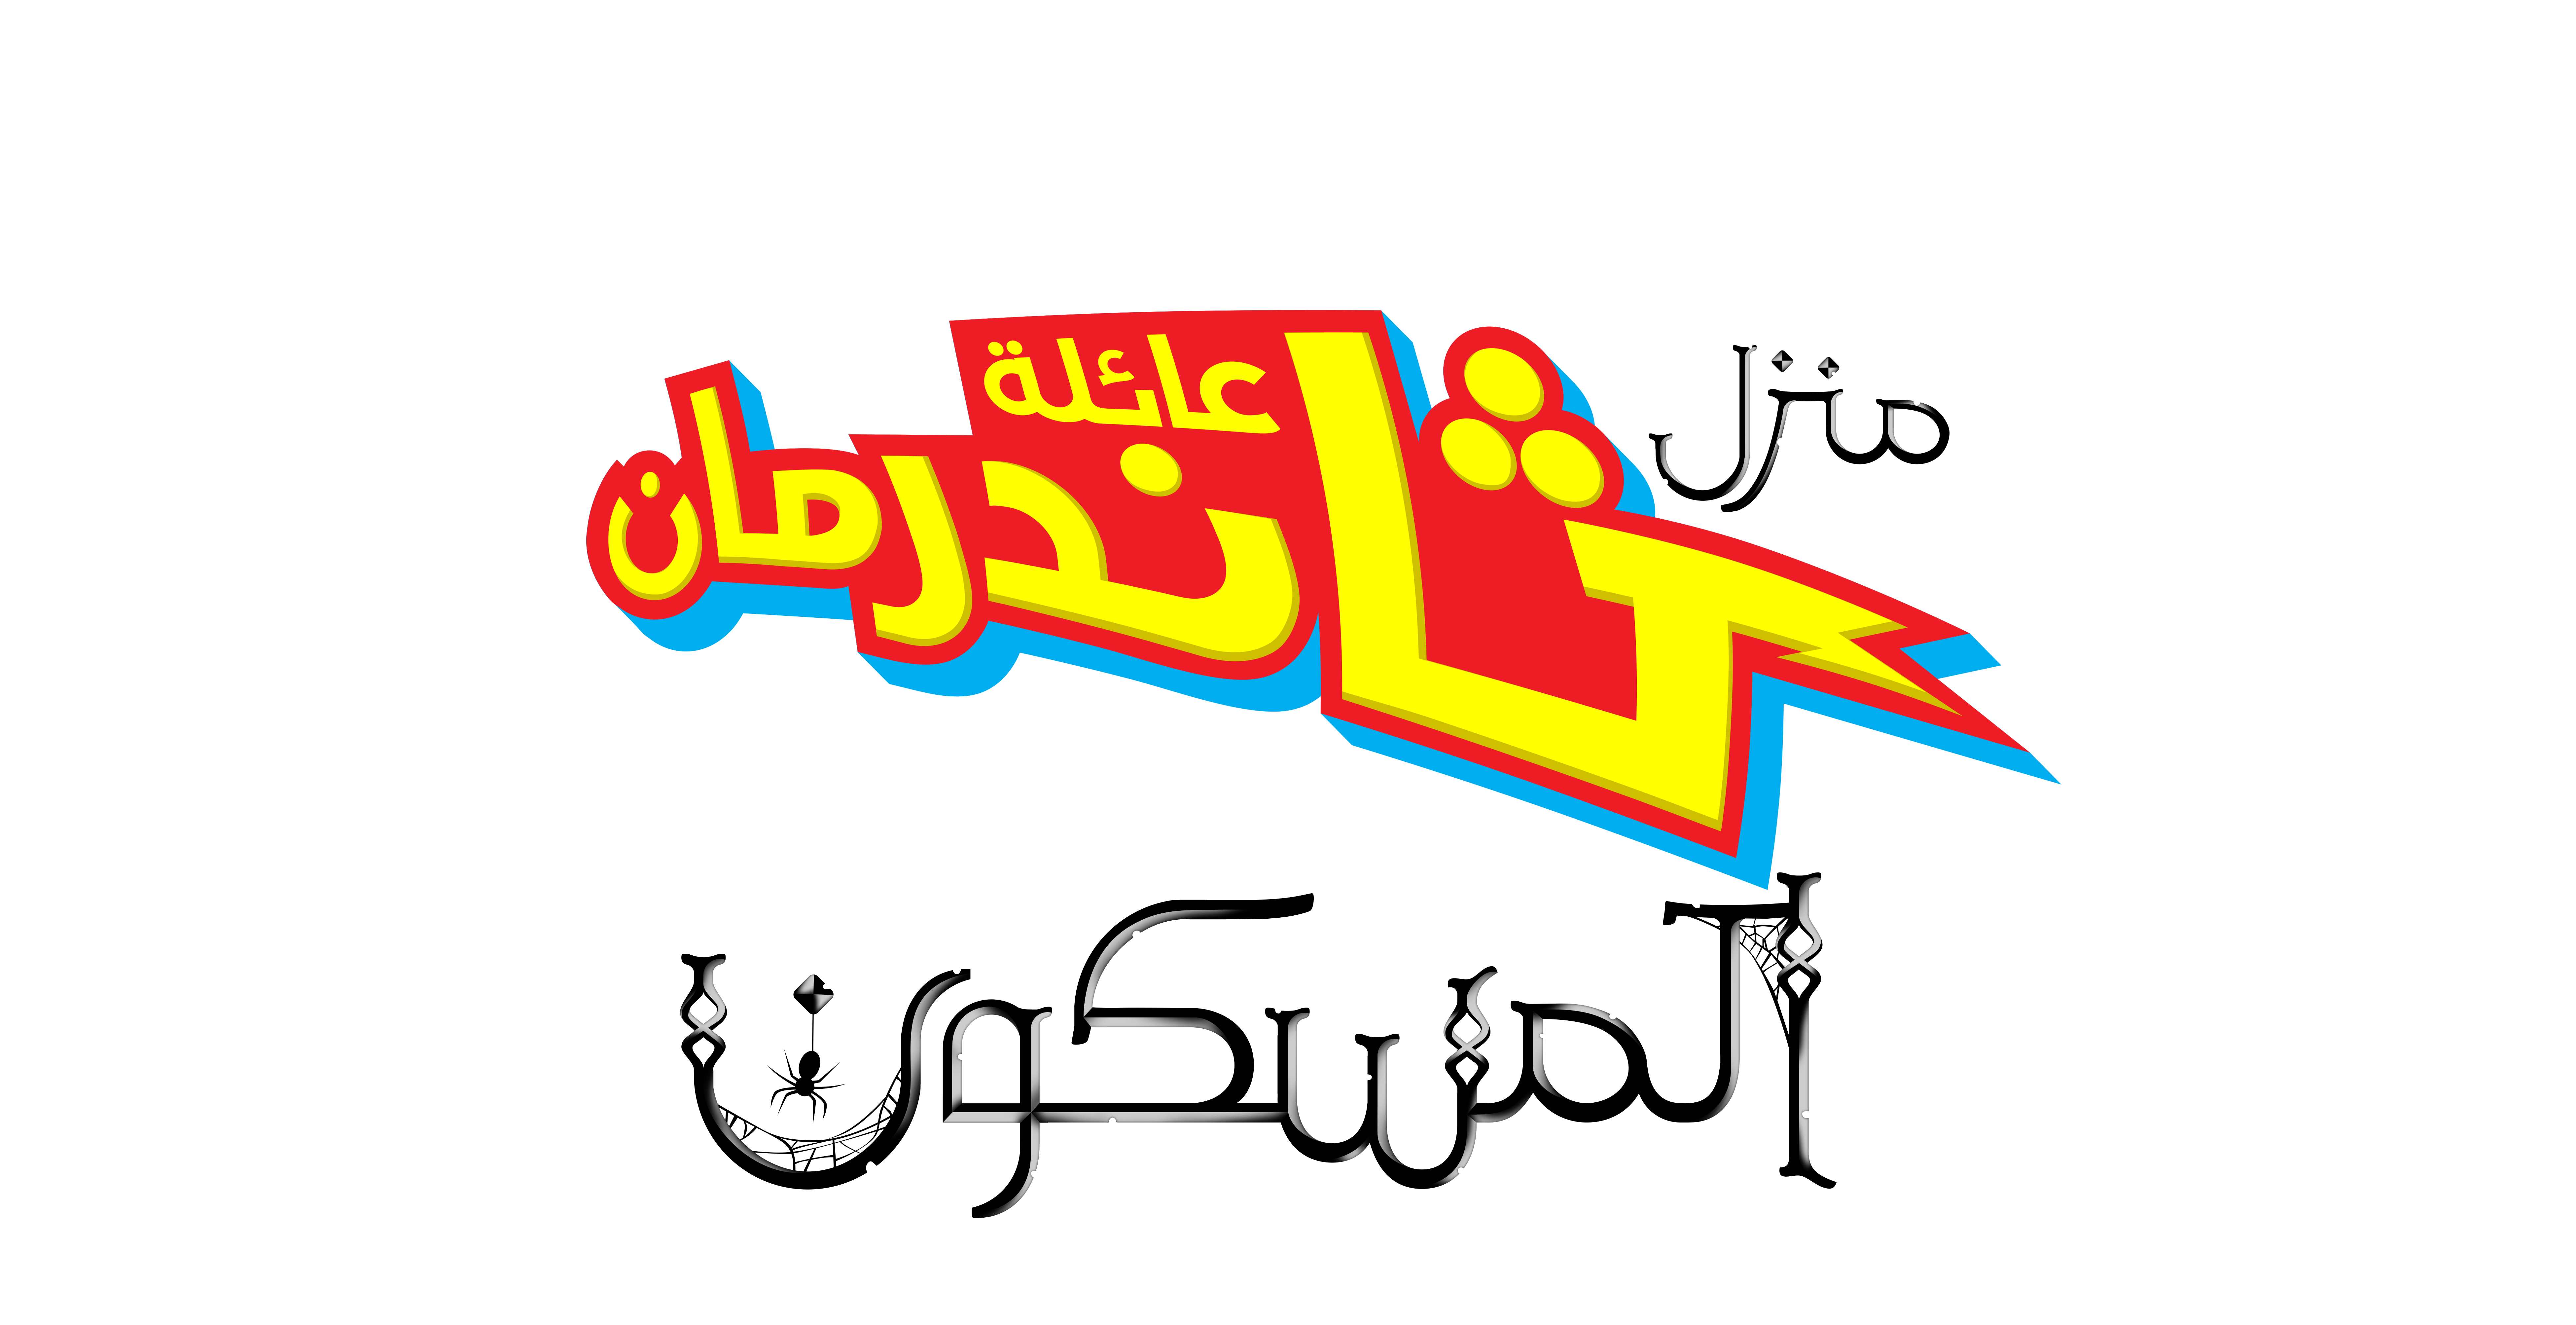 نكلوديون العربية Nickelodeon arabia logos Nickelodeon Photo (39010060